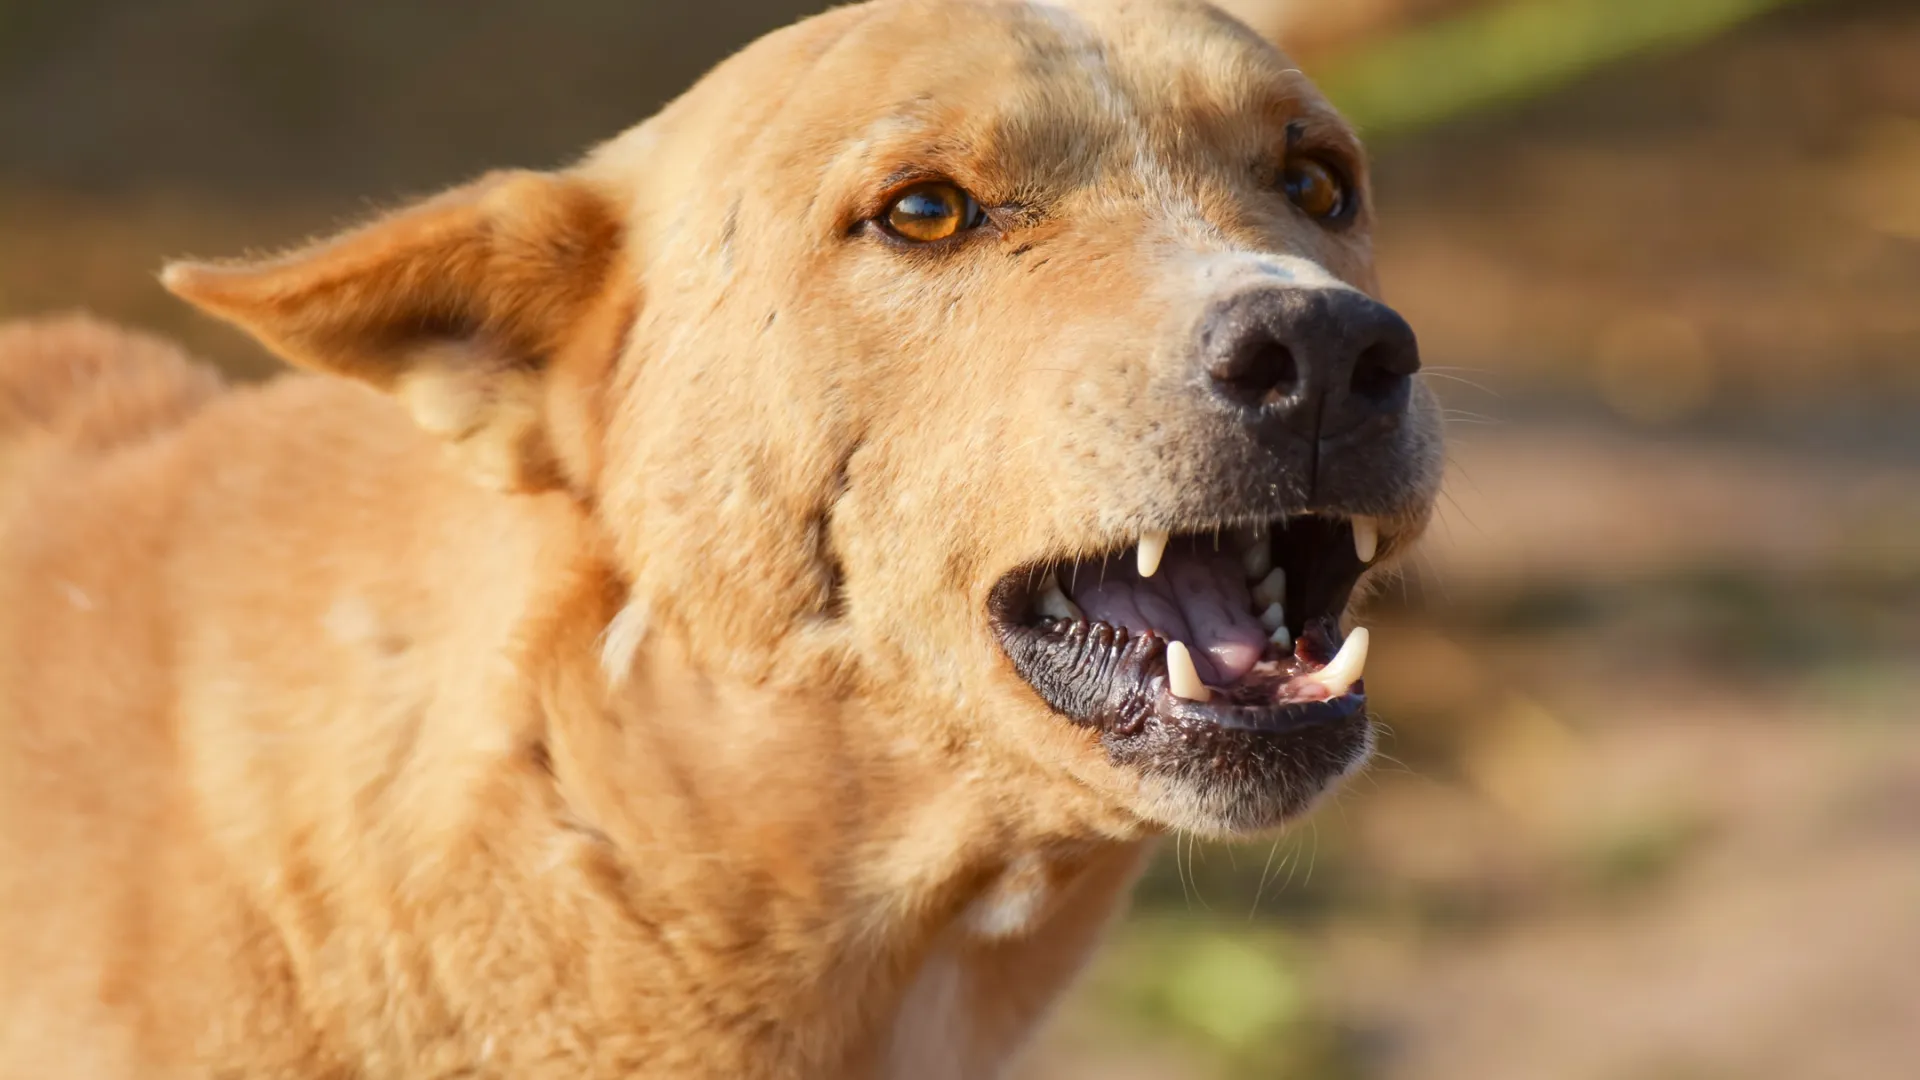 После укуса собаки девочка стала бояться животных. Фото: Hussain Warraich/Shutterstock/Fotodom